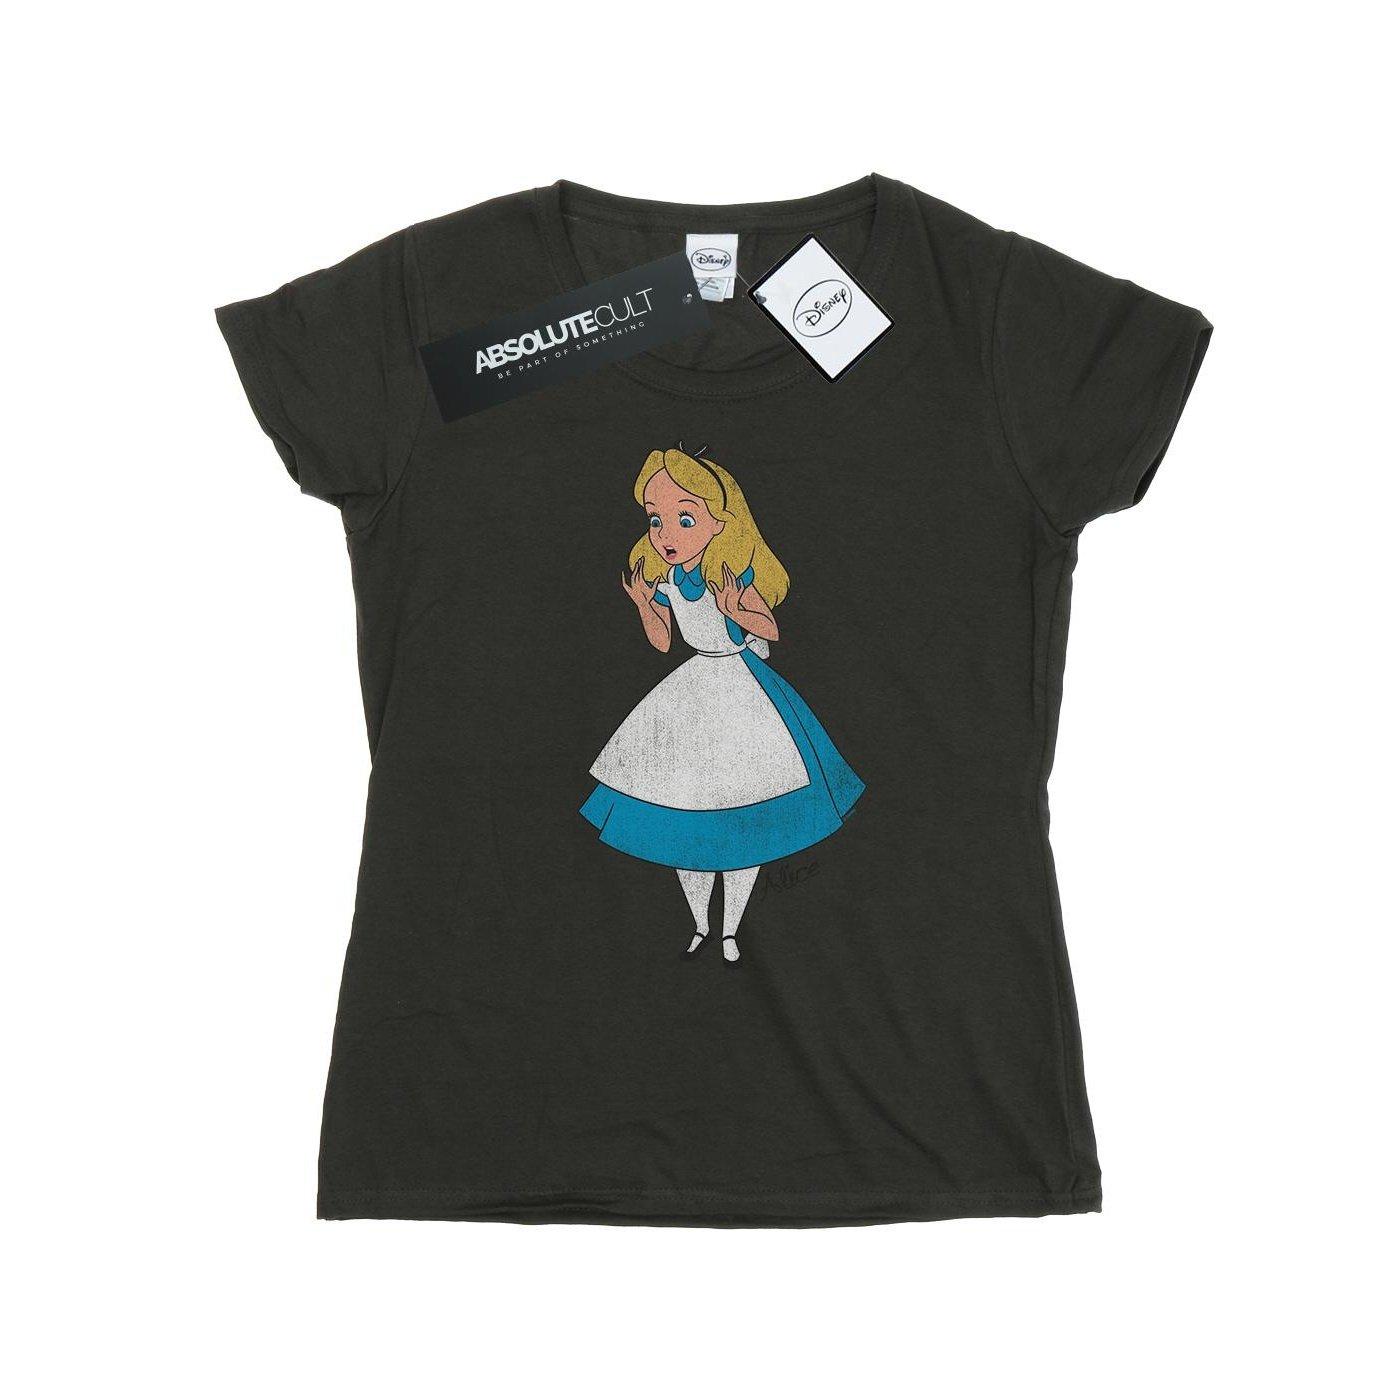 Tshirt Damen Taubengrau XL von Alice in Wonderland